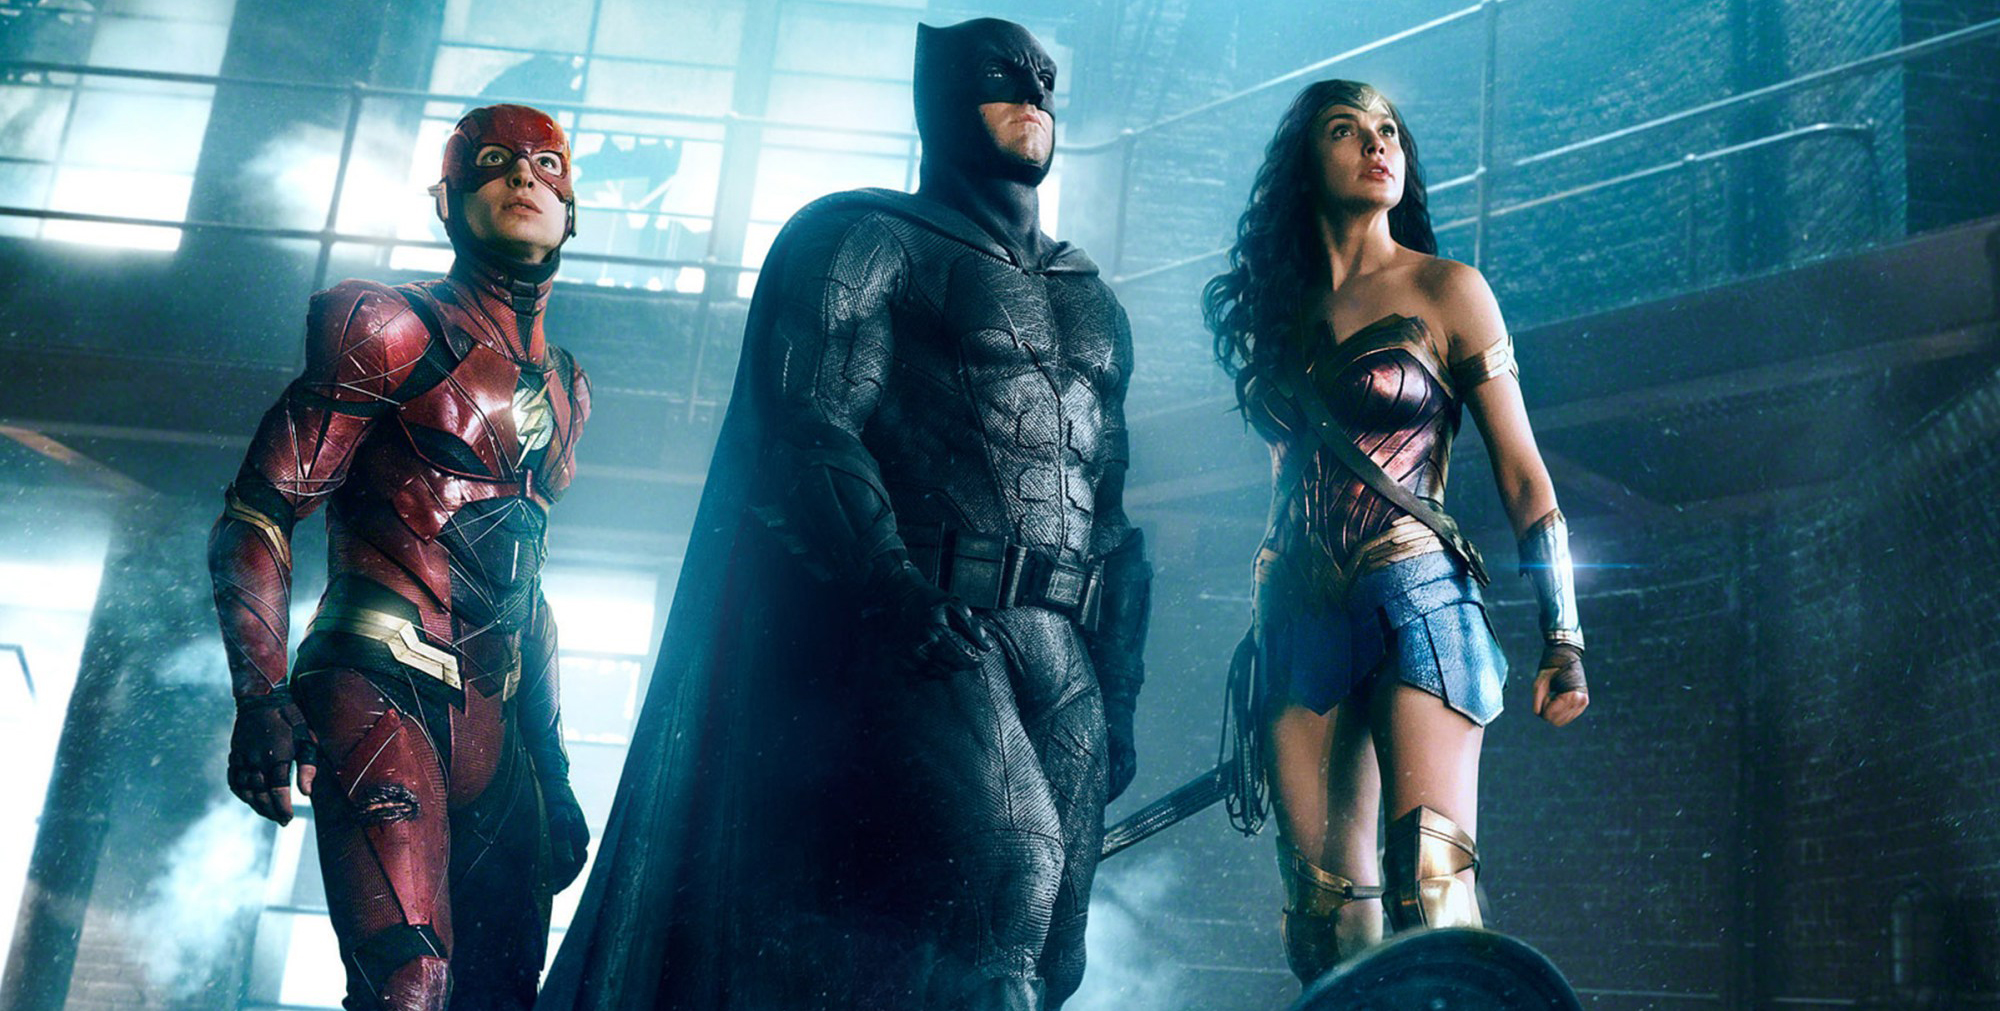 Palpita el estreno de Justice League con estos impresionantes pósters de sus protagonistas